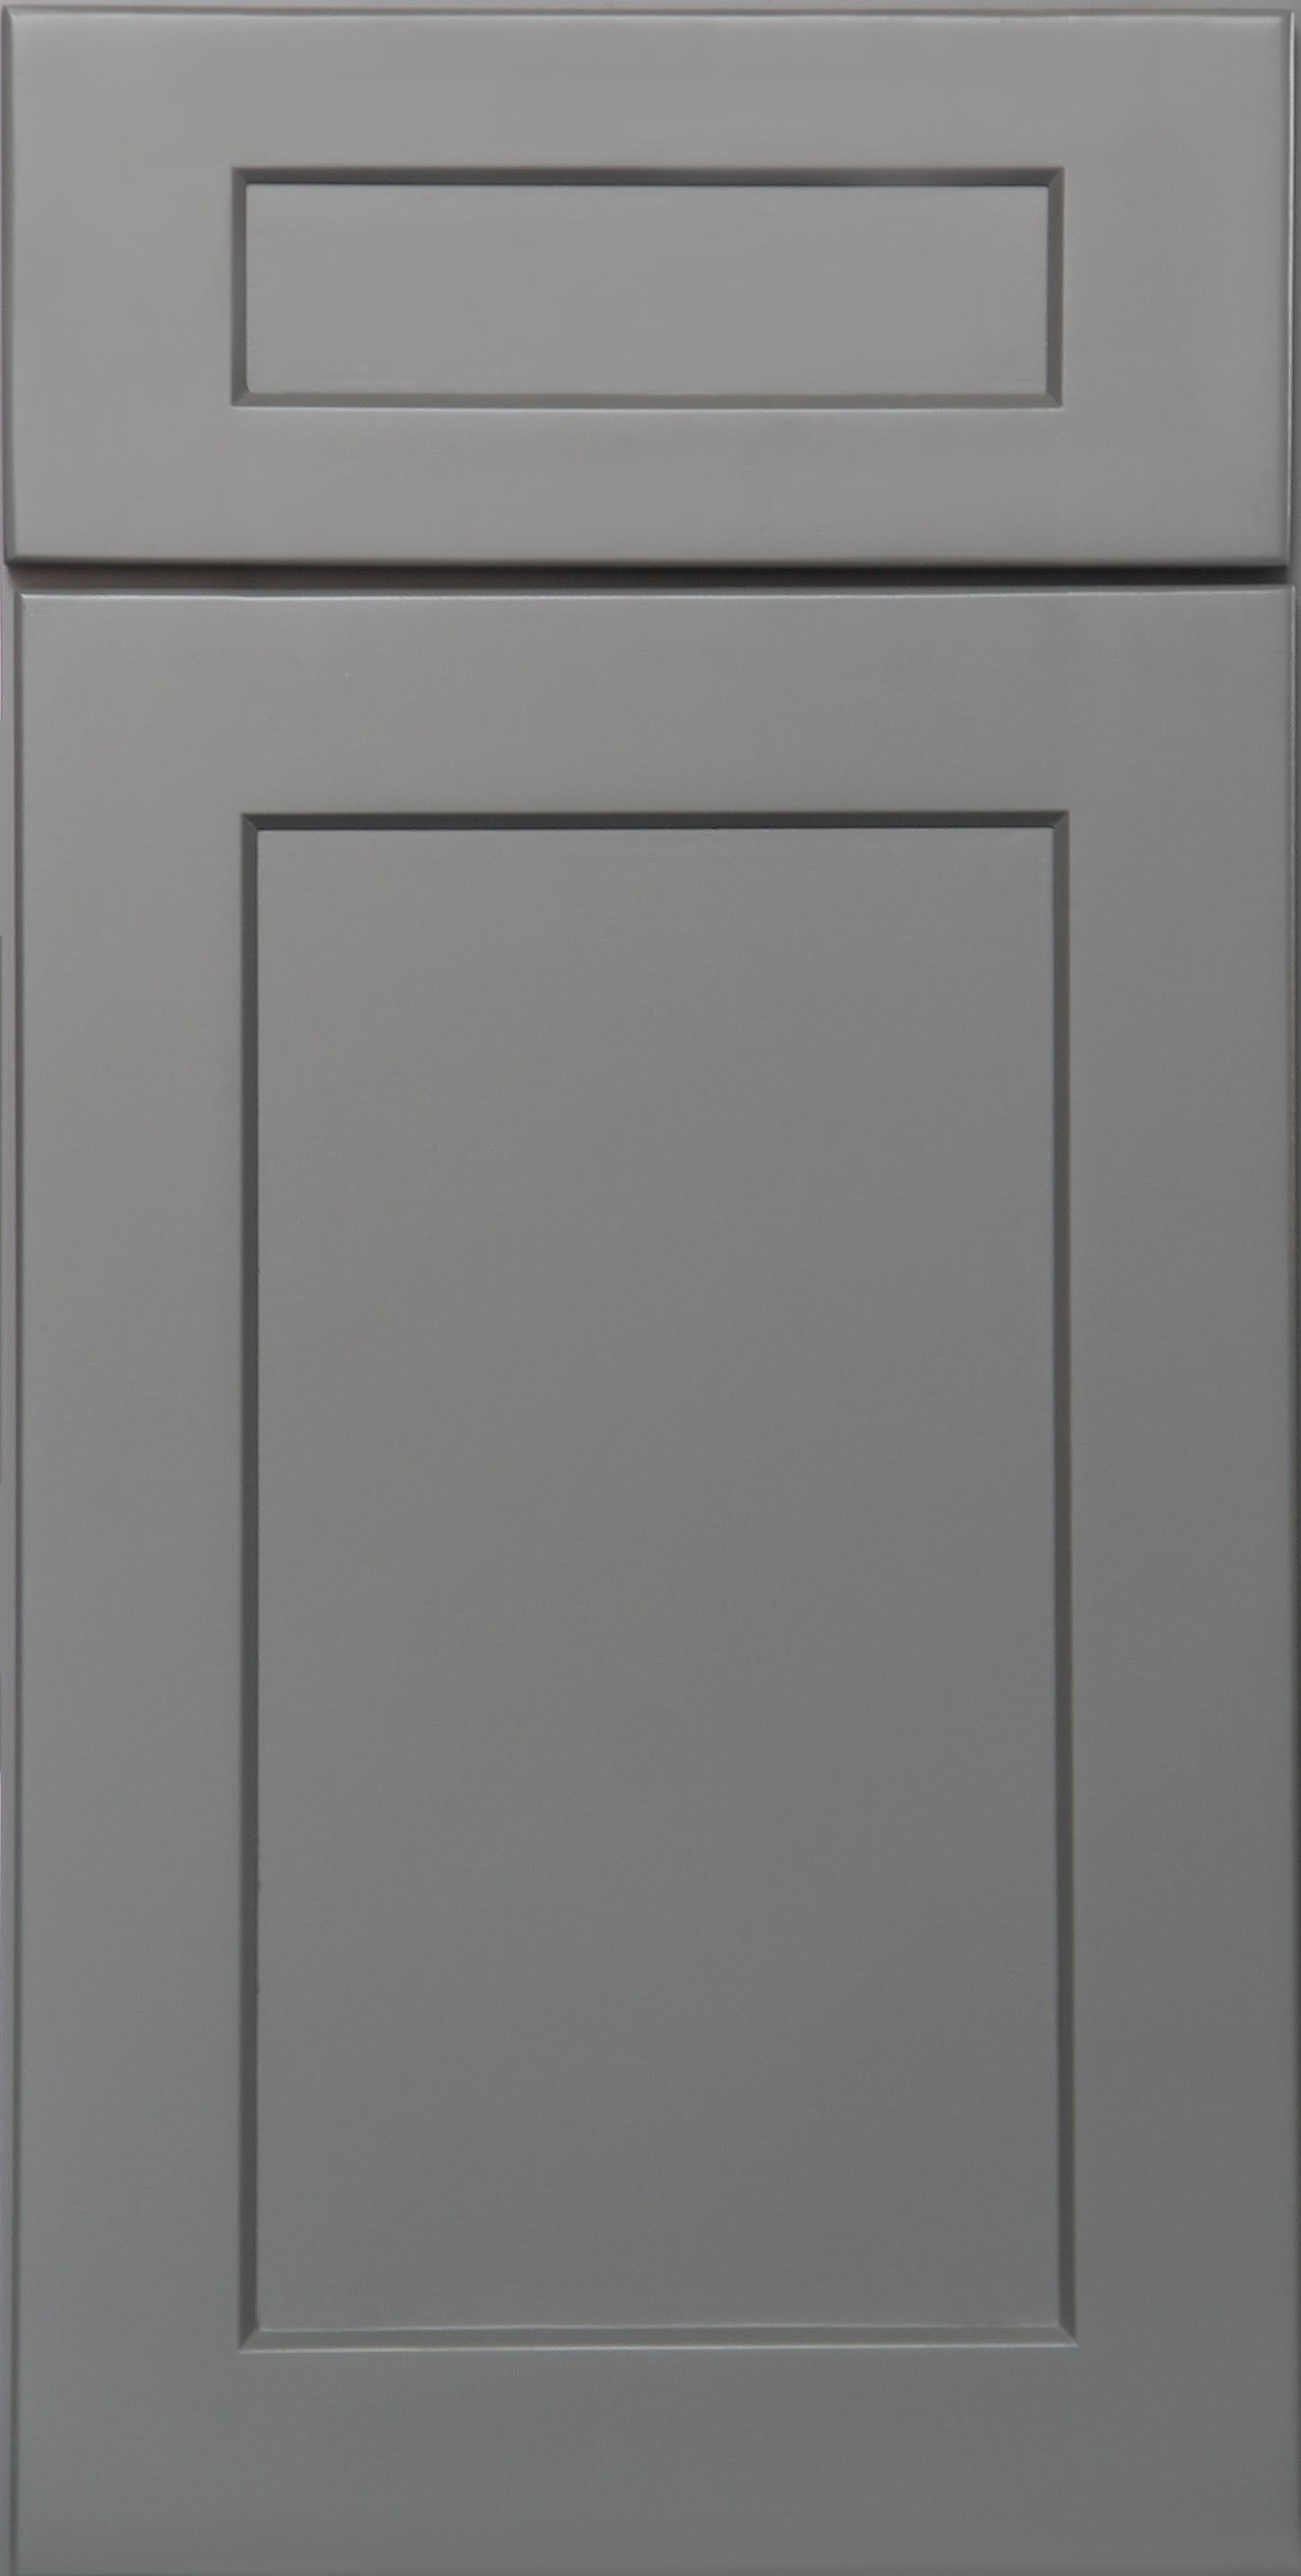 SHAKER GREY SAMPLE DOOR - 11"W X 15"H X 3/4"D